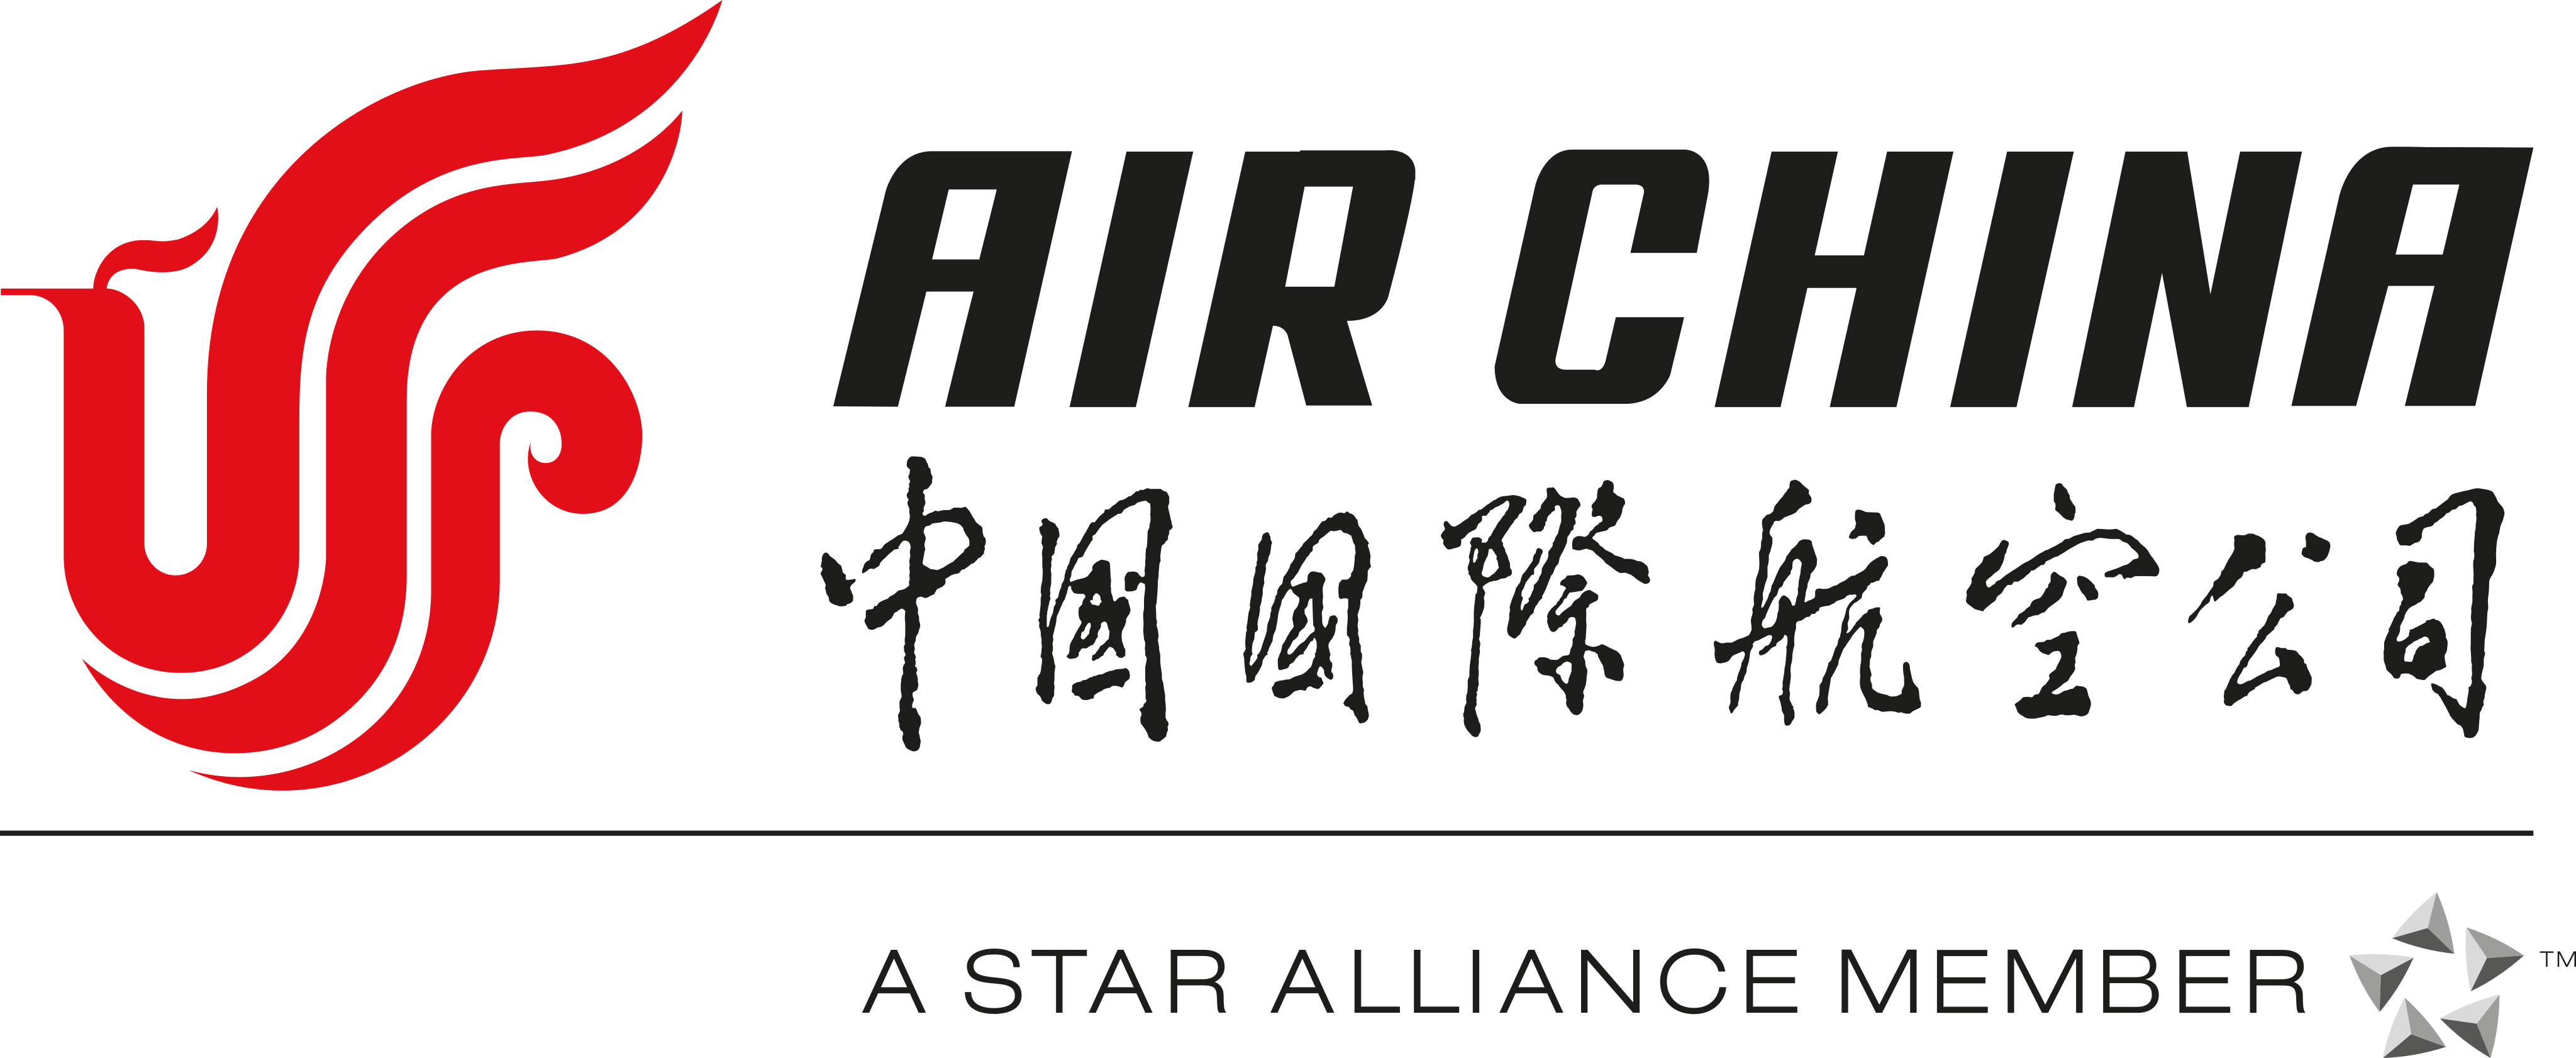 air china logo 2 - Air China Logo